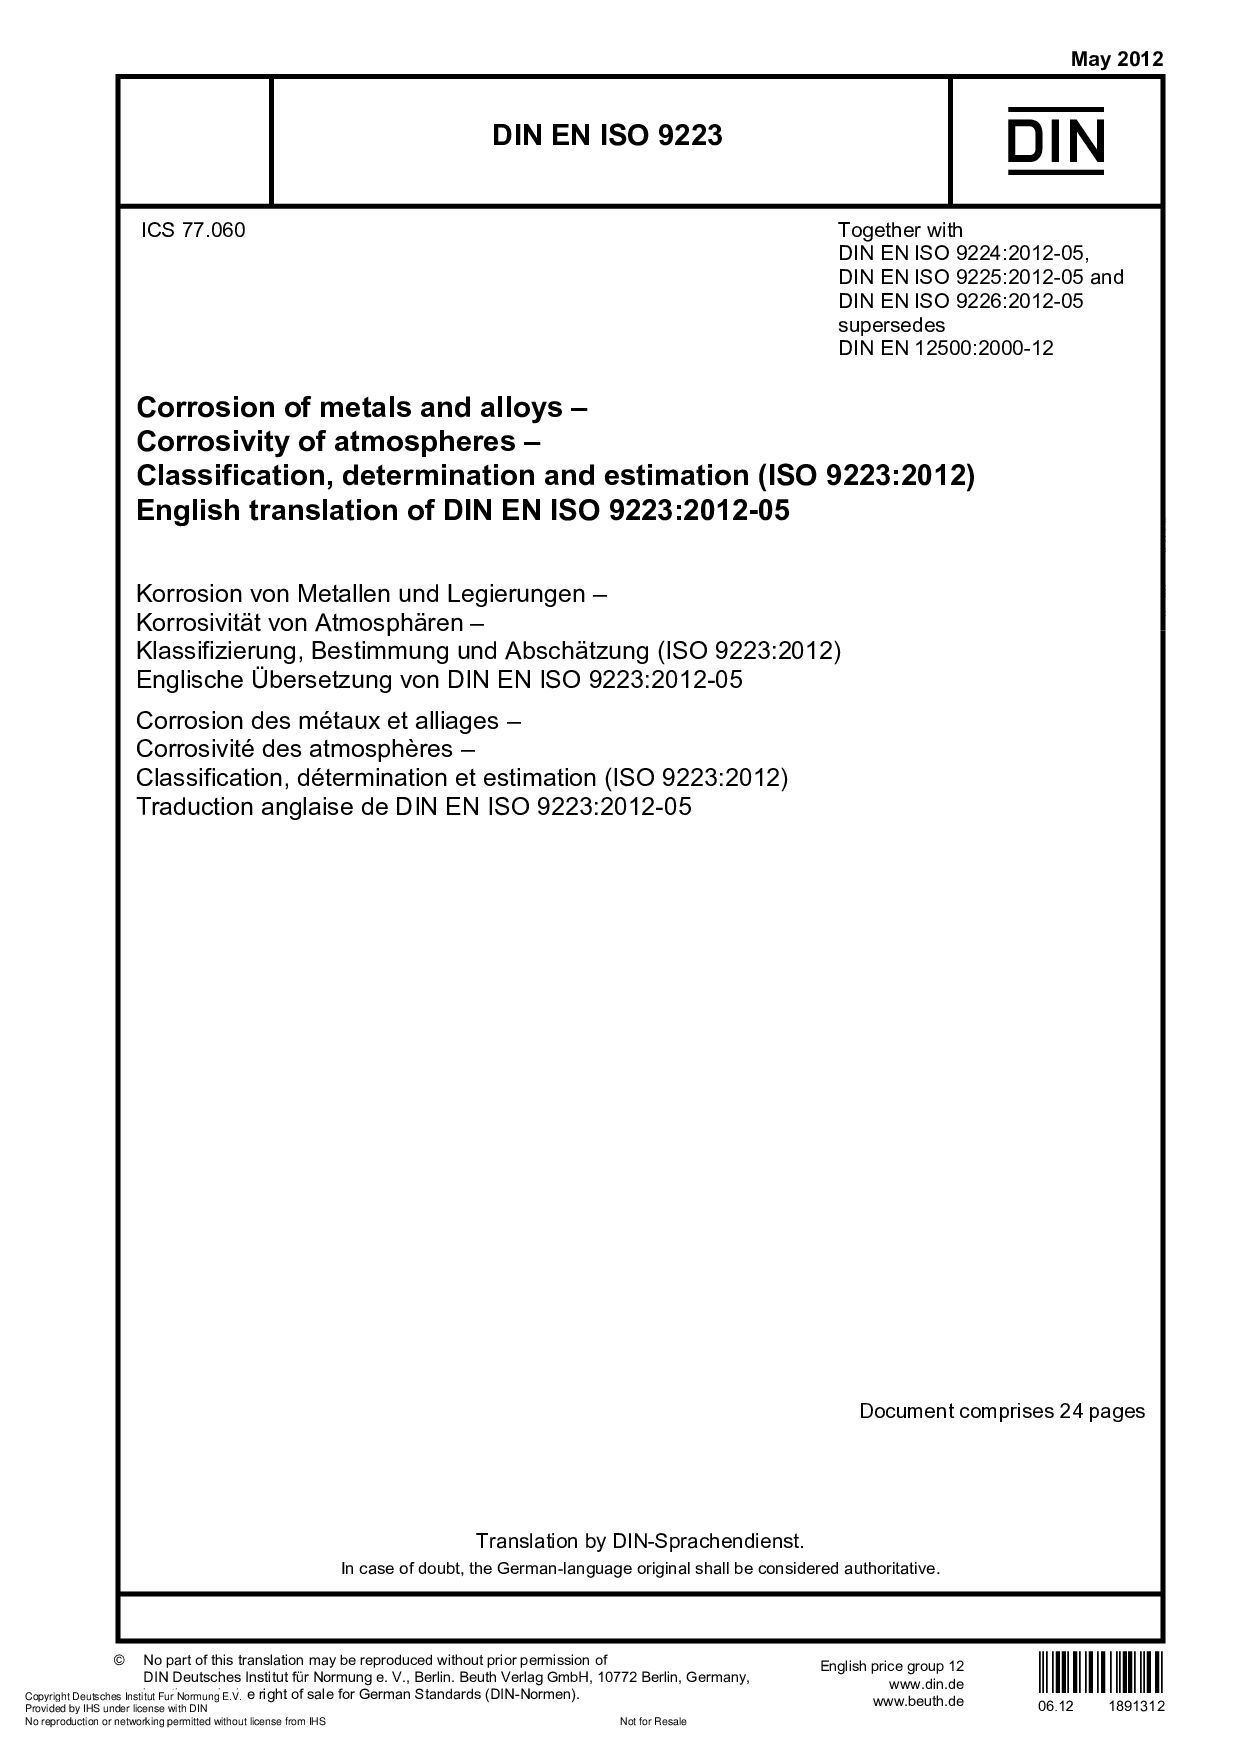 DIN EN ISO 9223-2012